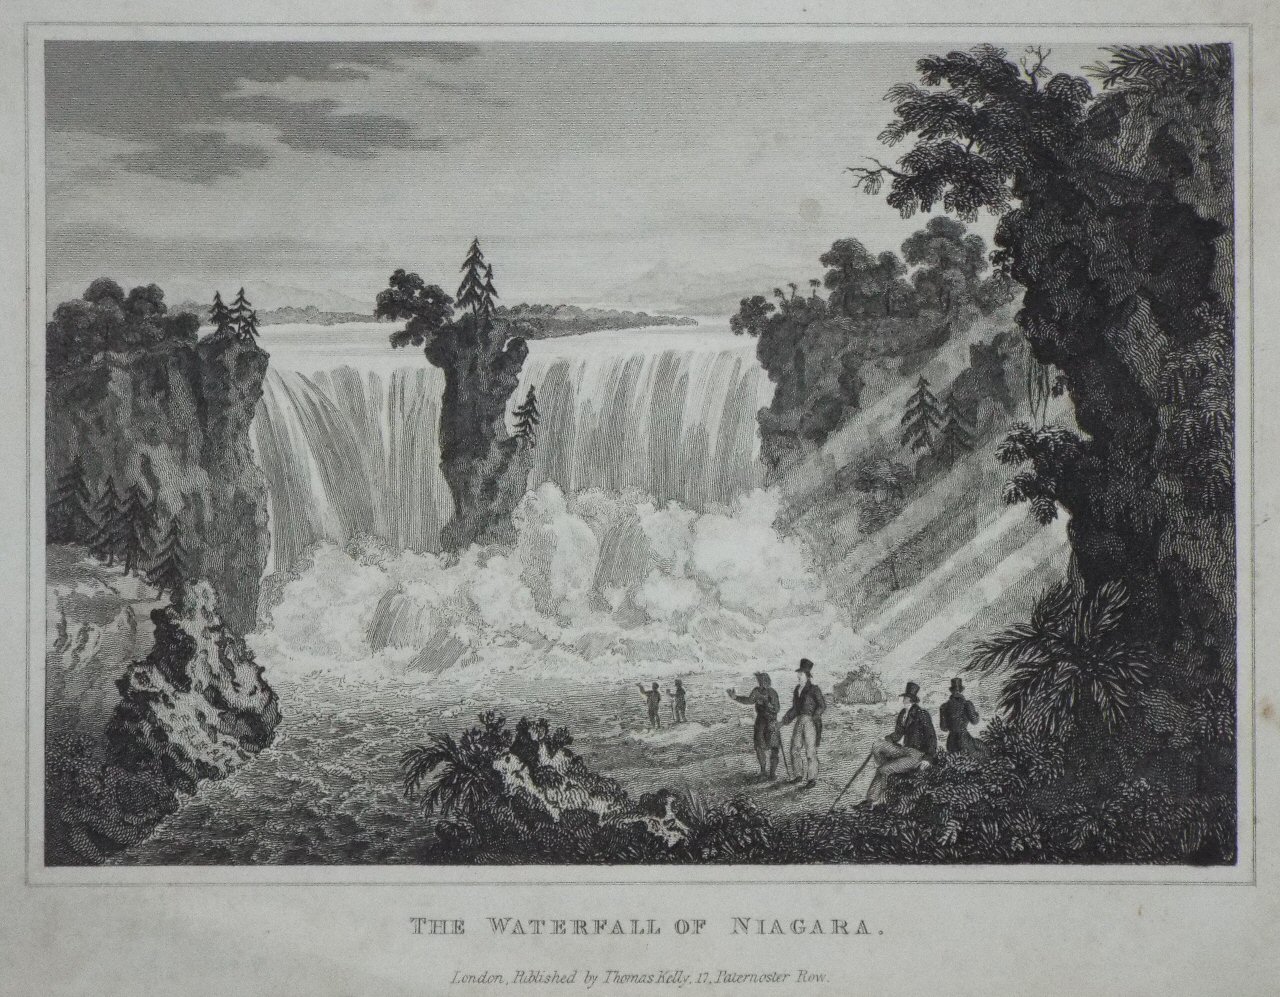 Print - The Waterfall of Niagara.